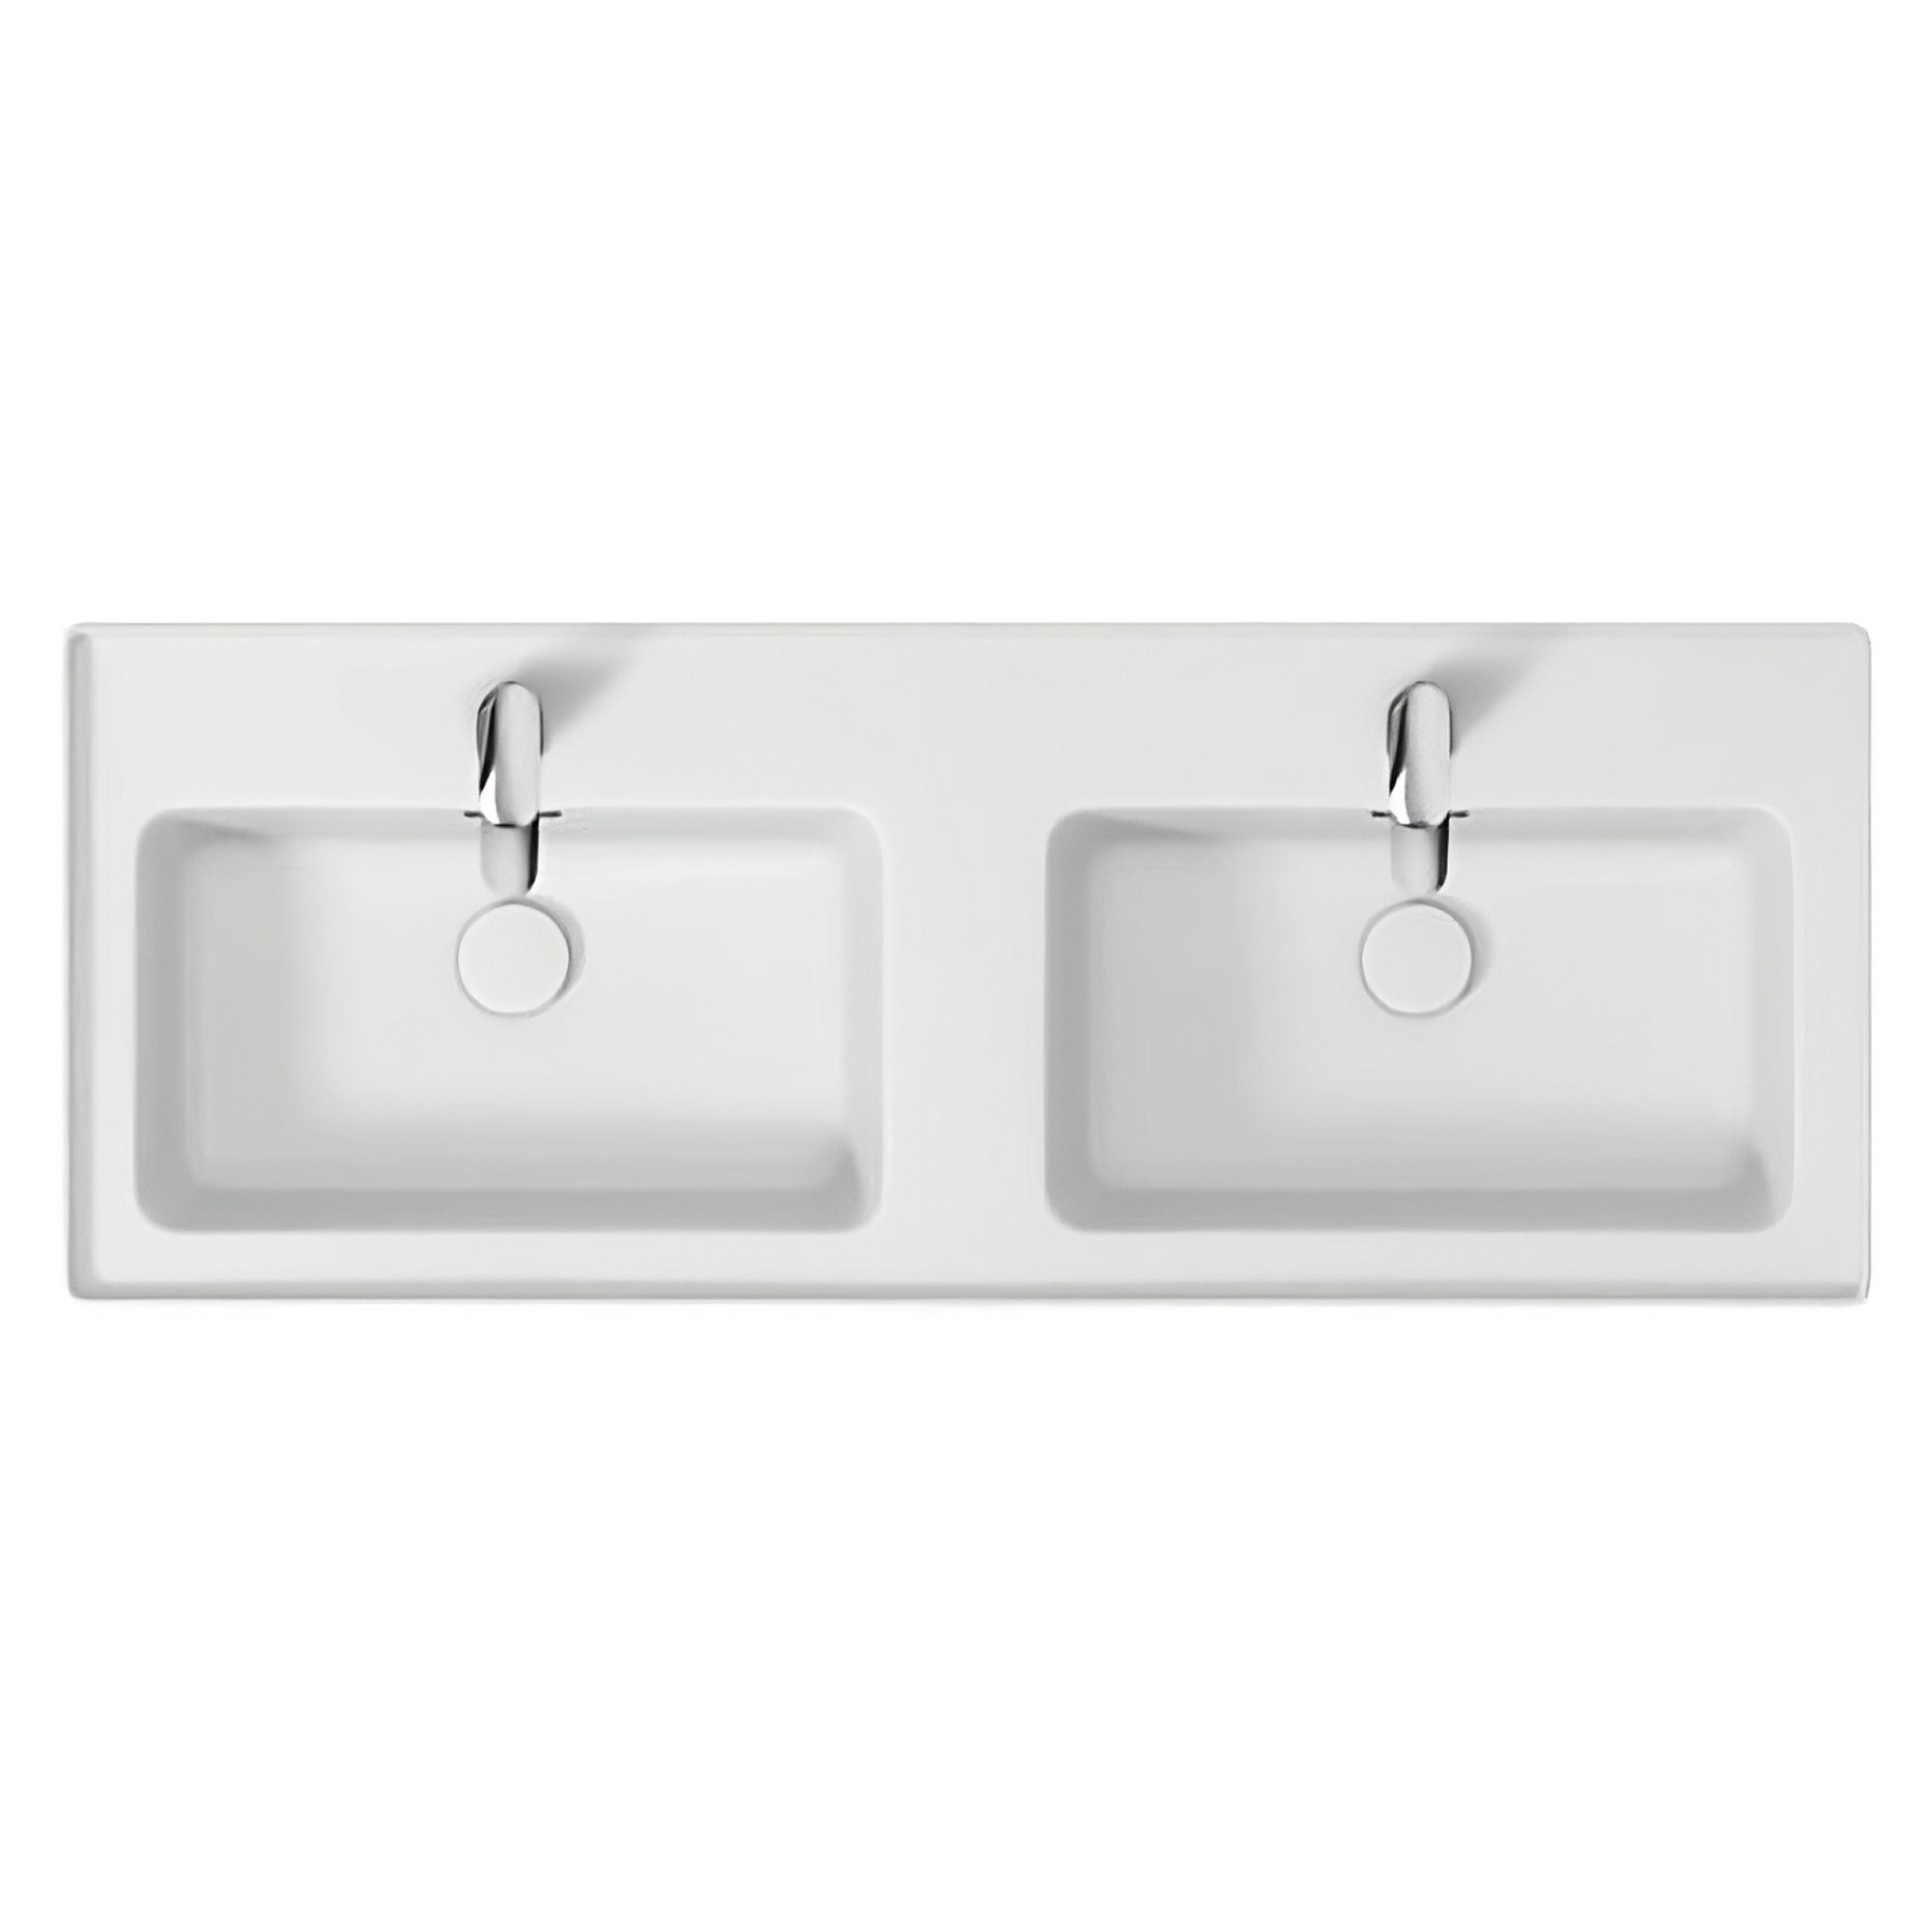 Weiß & mit Waschbeckenunterschrank Schubladen Keramikwaschbecken Badmöbel Set CREA KOLMAN 120 Badezimmerschrank